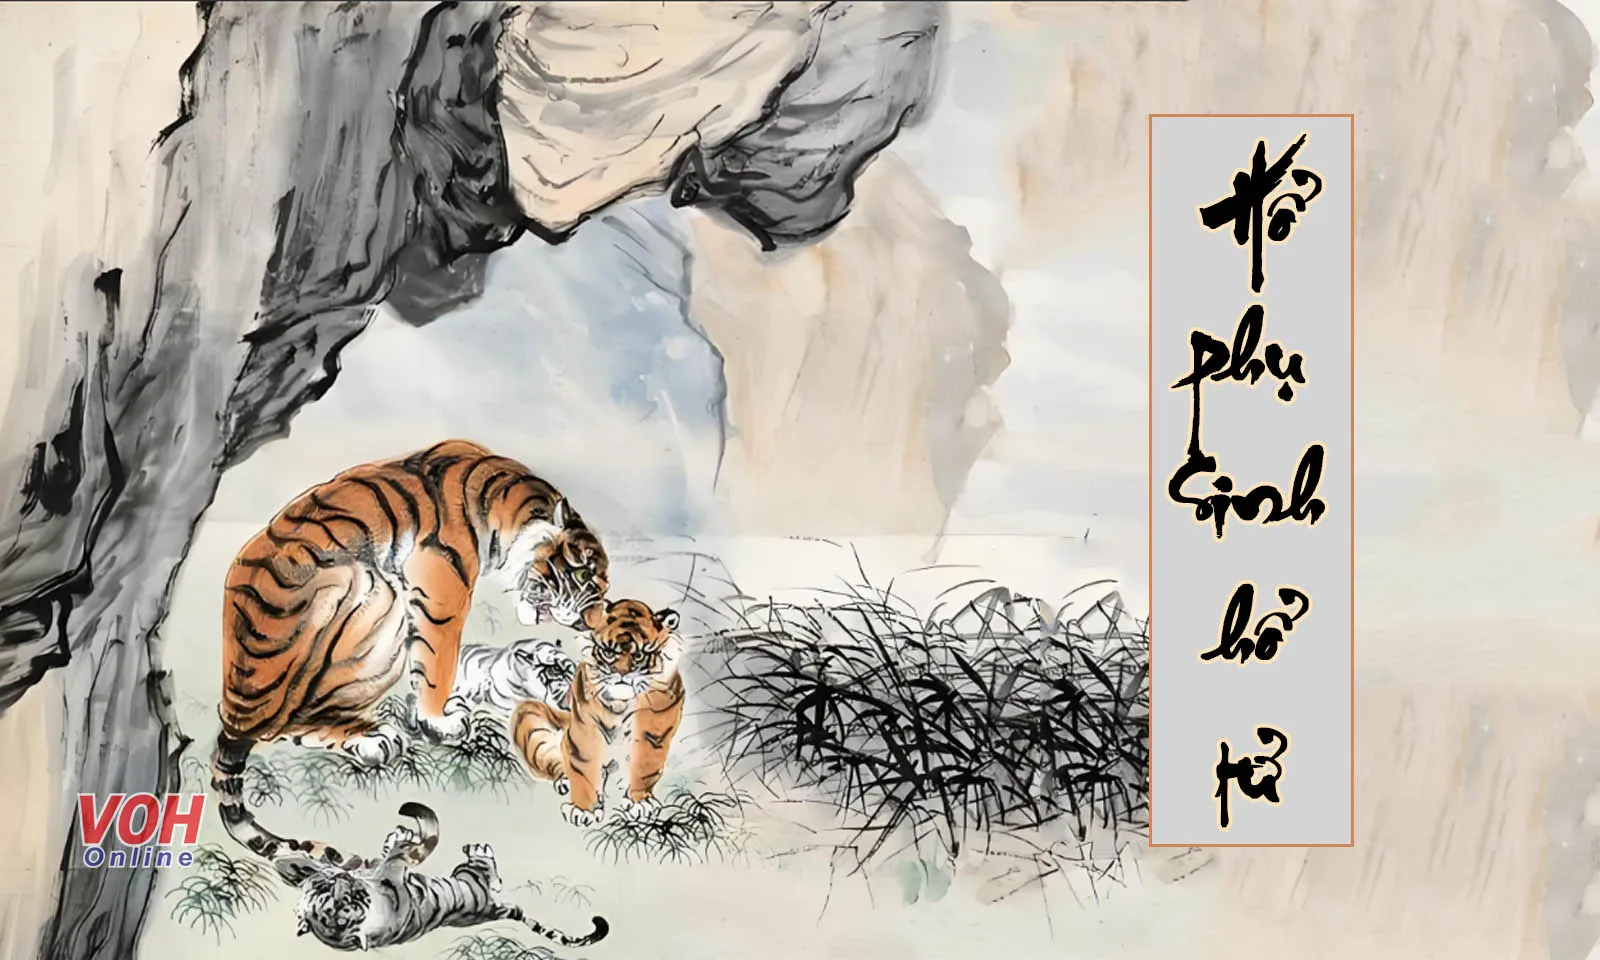 Ý nghĩa câu “Hổ phụ sinh hổ tử” là gì?